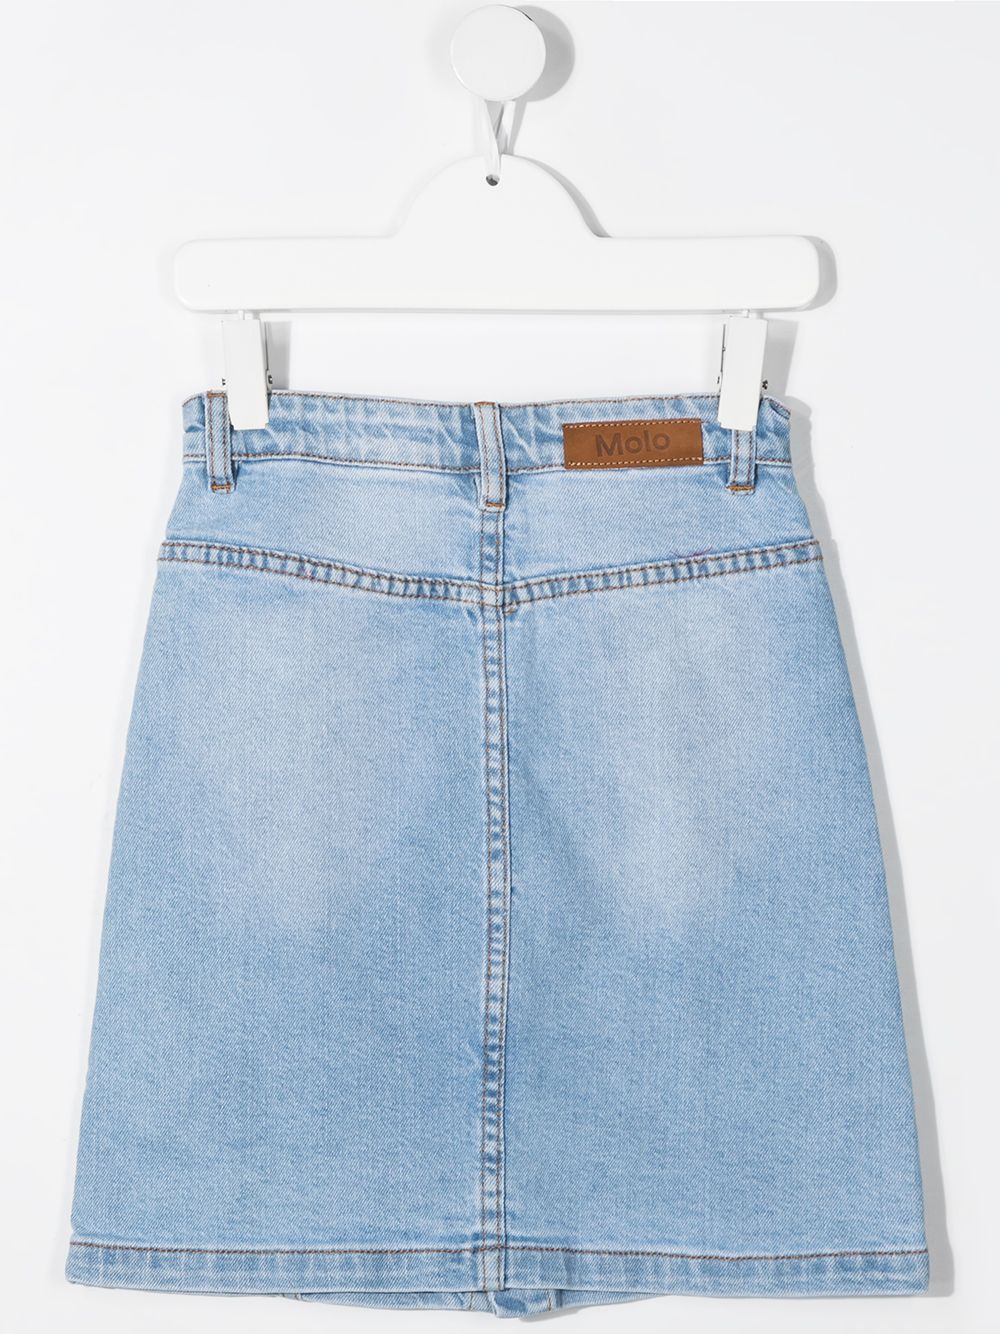 фото Molo джинсовая юбка на пуговицах